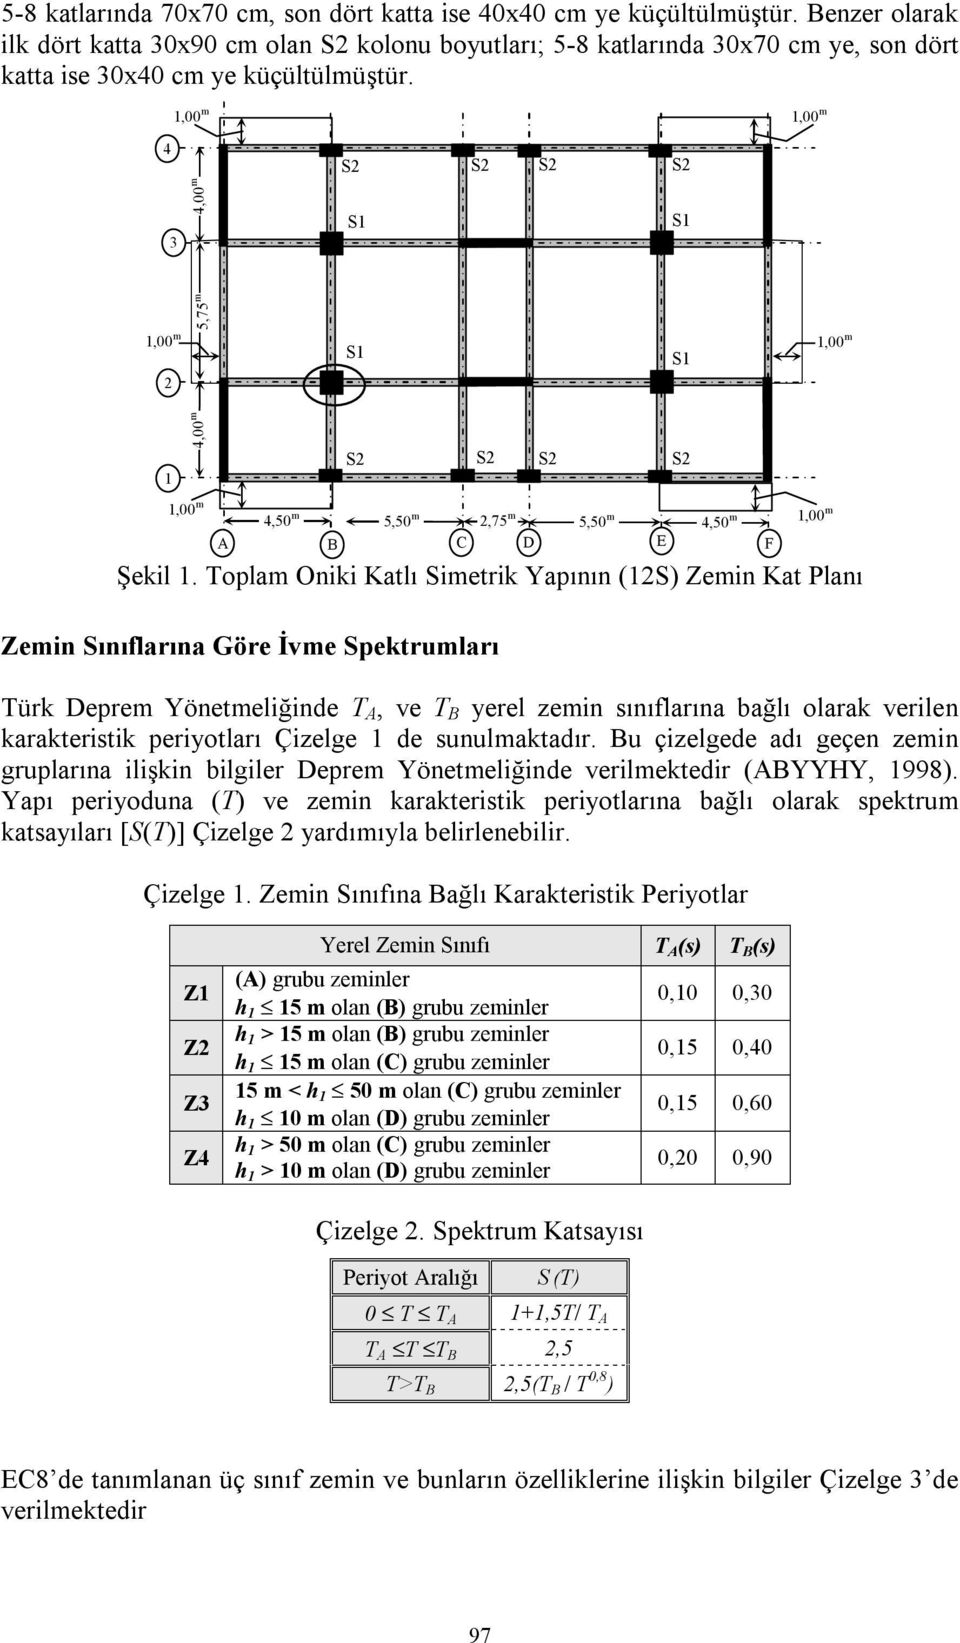 Toplam Oniki lı Simetrik Yapının (S) Zemin Planı Zemin Sınıflarına Göre İvme Spektrumları Türk Deprem Yönetmeliğinde T, ve T yerel zemin sınıflarına bağlı olarak verilen karakteristik periyotları